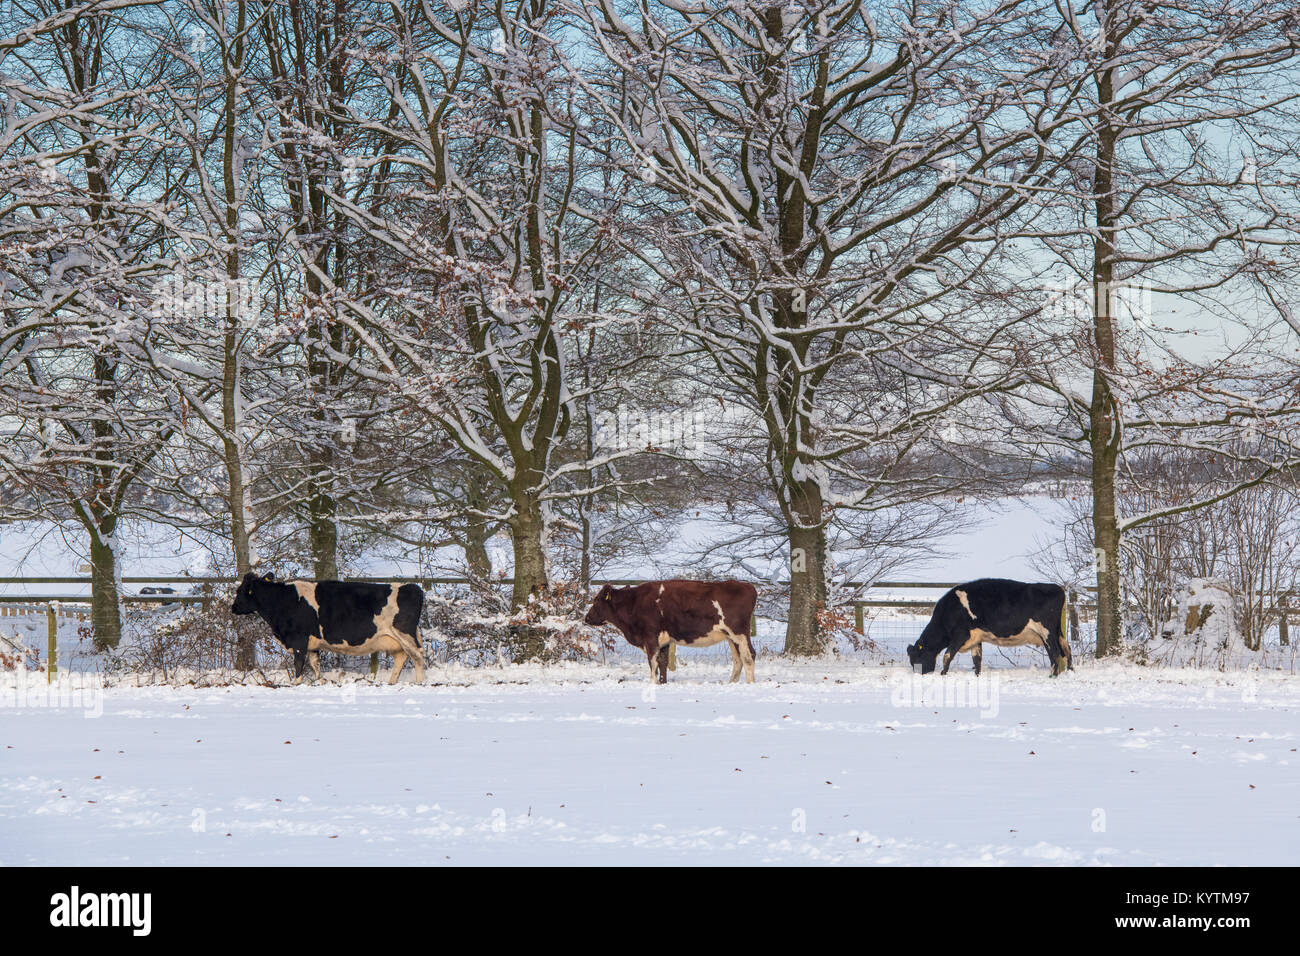 Tre mucche e alberi invernali nella neve nella campagna del cotswold. Cotswolds, Gloucestershire, Inghilterra. Foto Stock